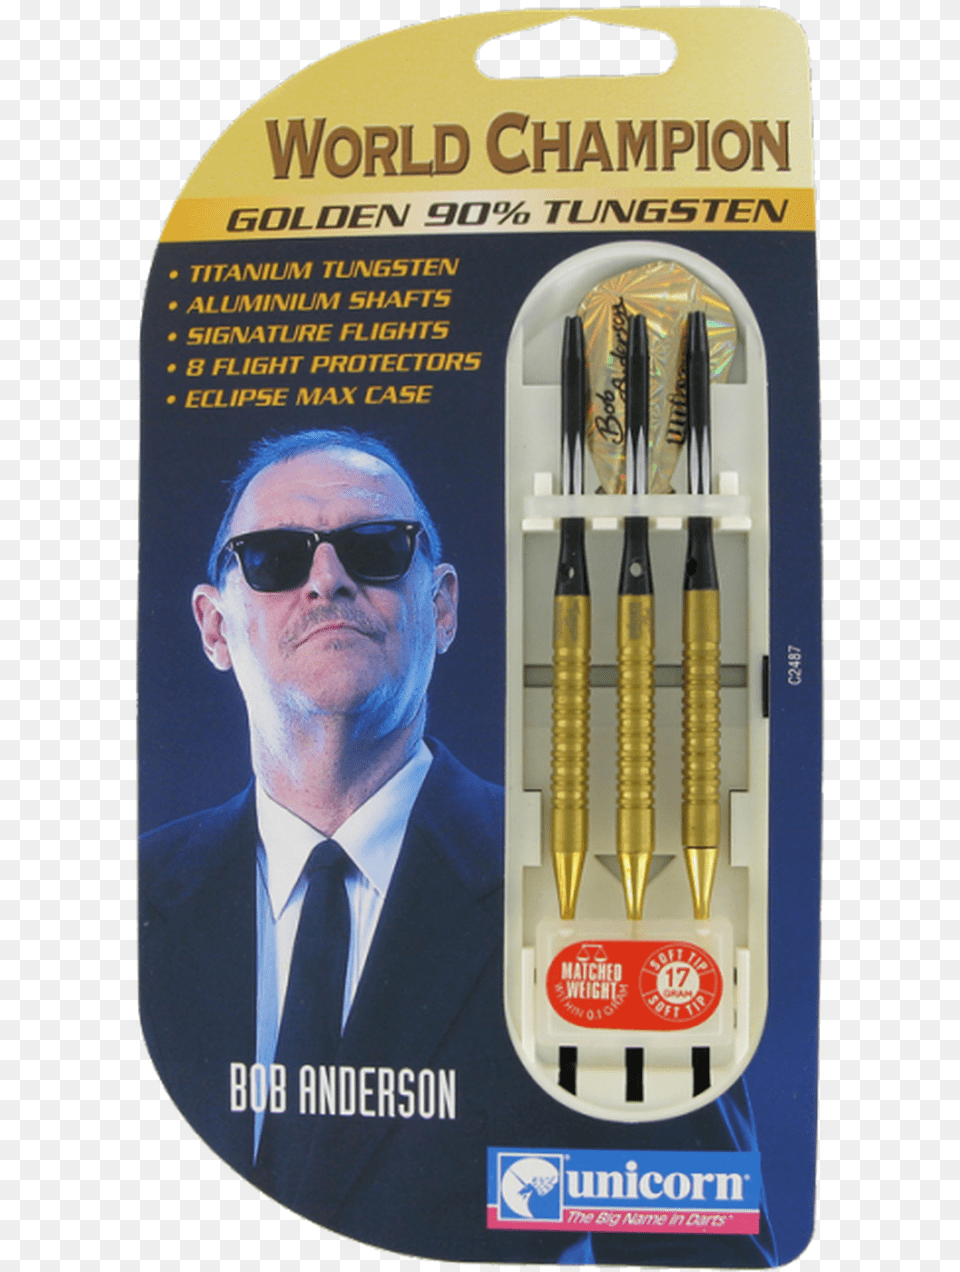 Unicorn Bob Anderson Golden World Champion 2ba Soft Bob Anderson Darts Gold, Accessories, Sunglasses, Person, Man Free Png Download